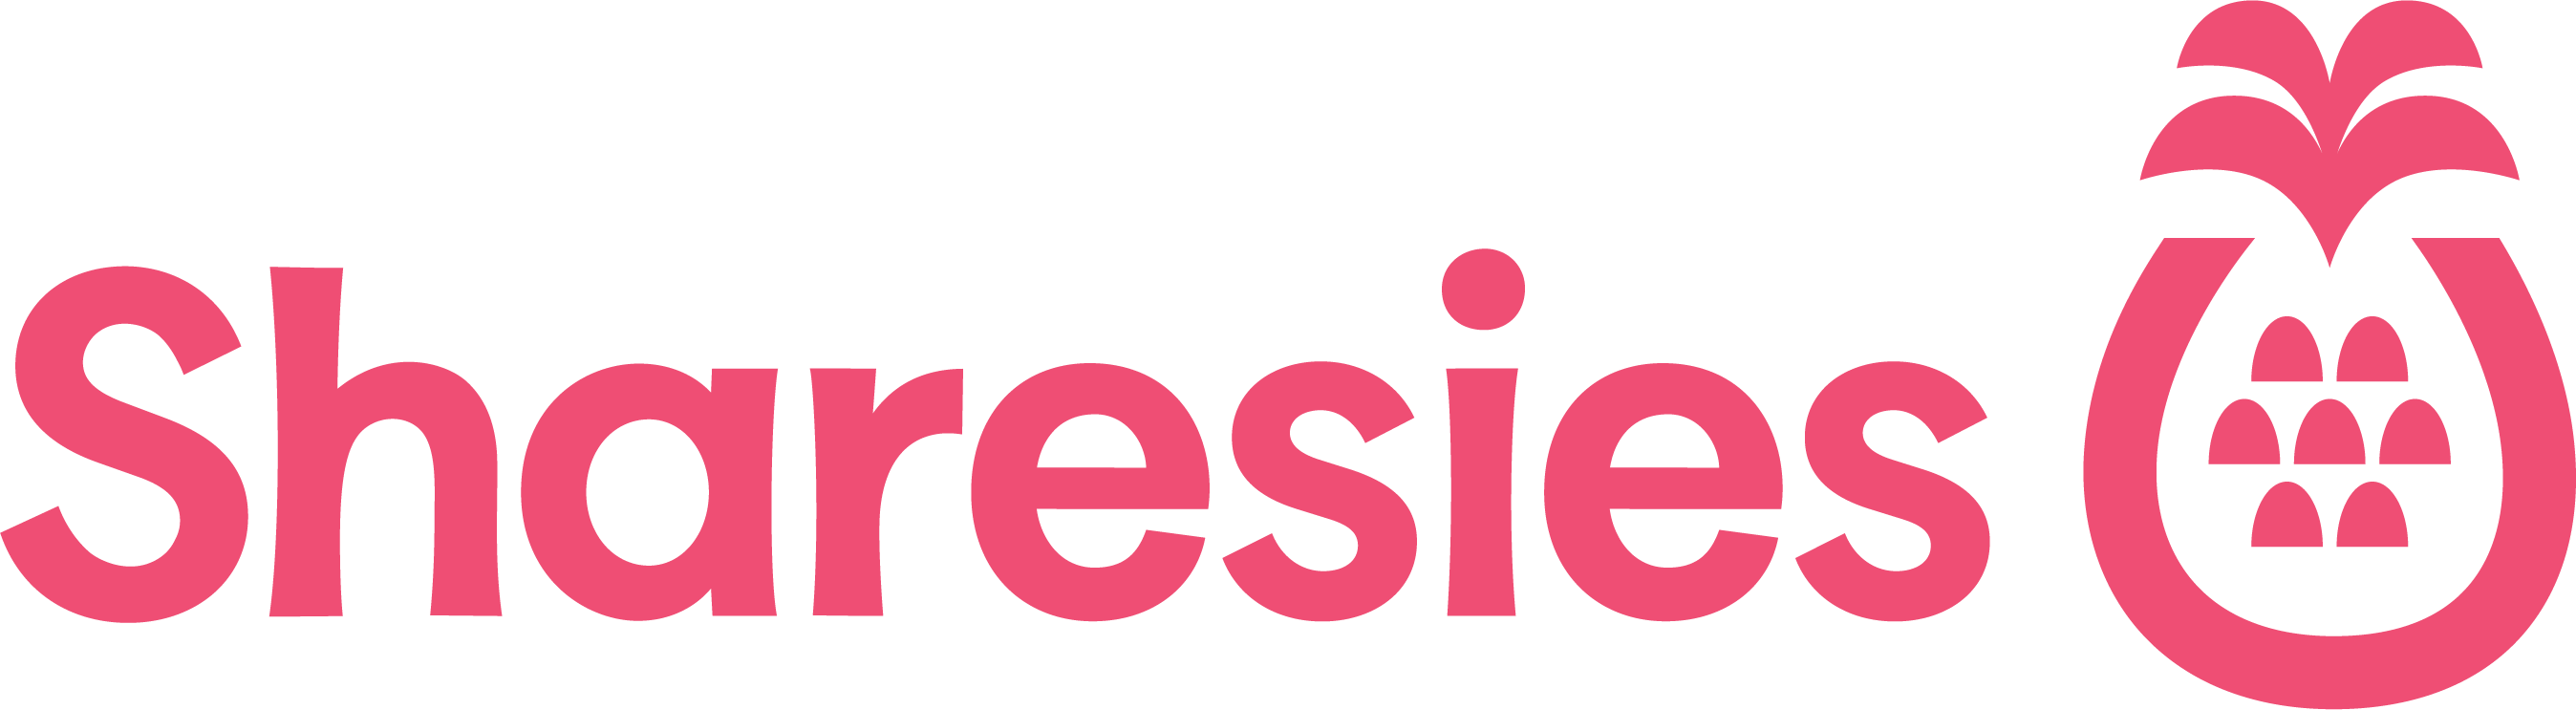 Sharesies logo